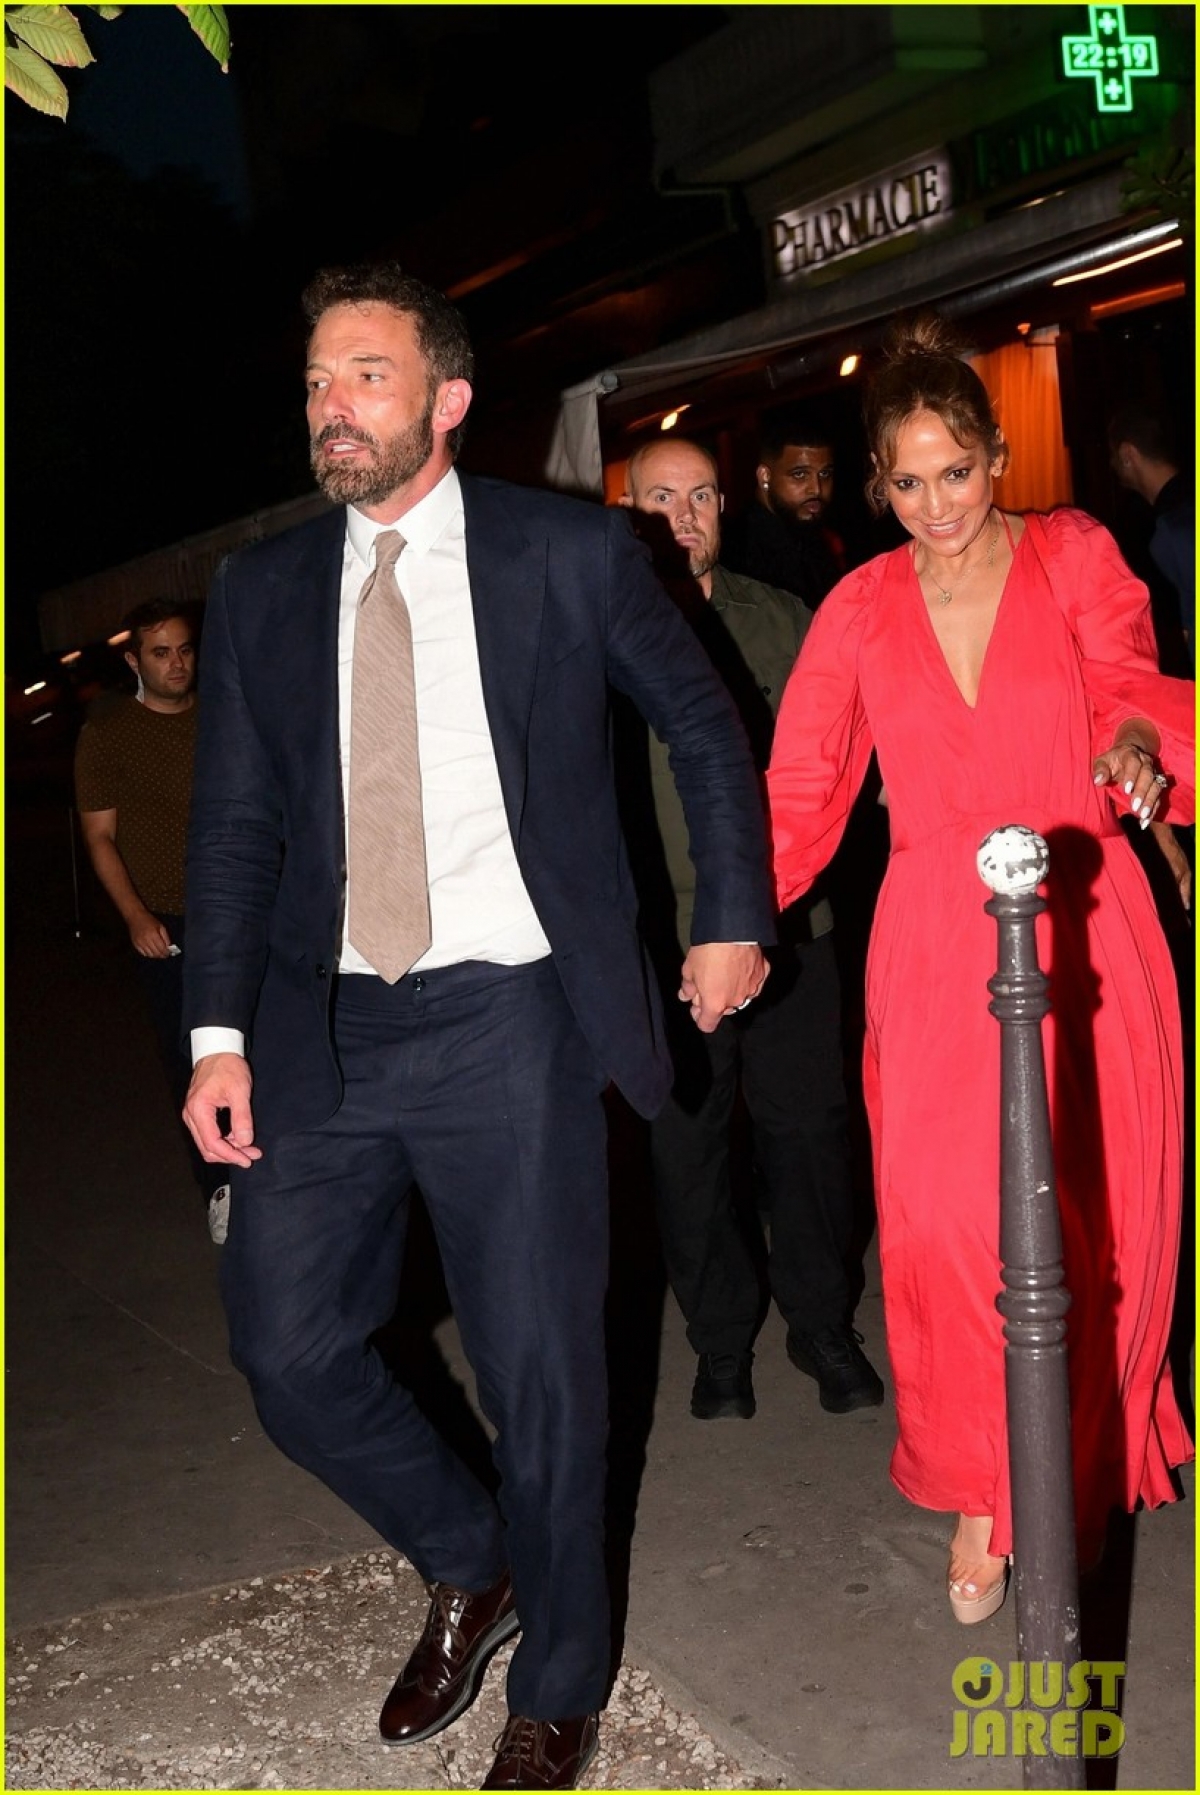 Vợ chồng Jennifer Lopez - Ben Affleck hưởng tuần trăng mật ở Pháp - Ảnh 1.